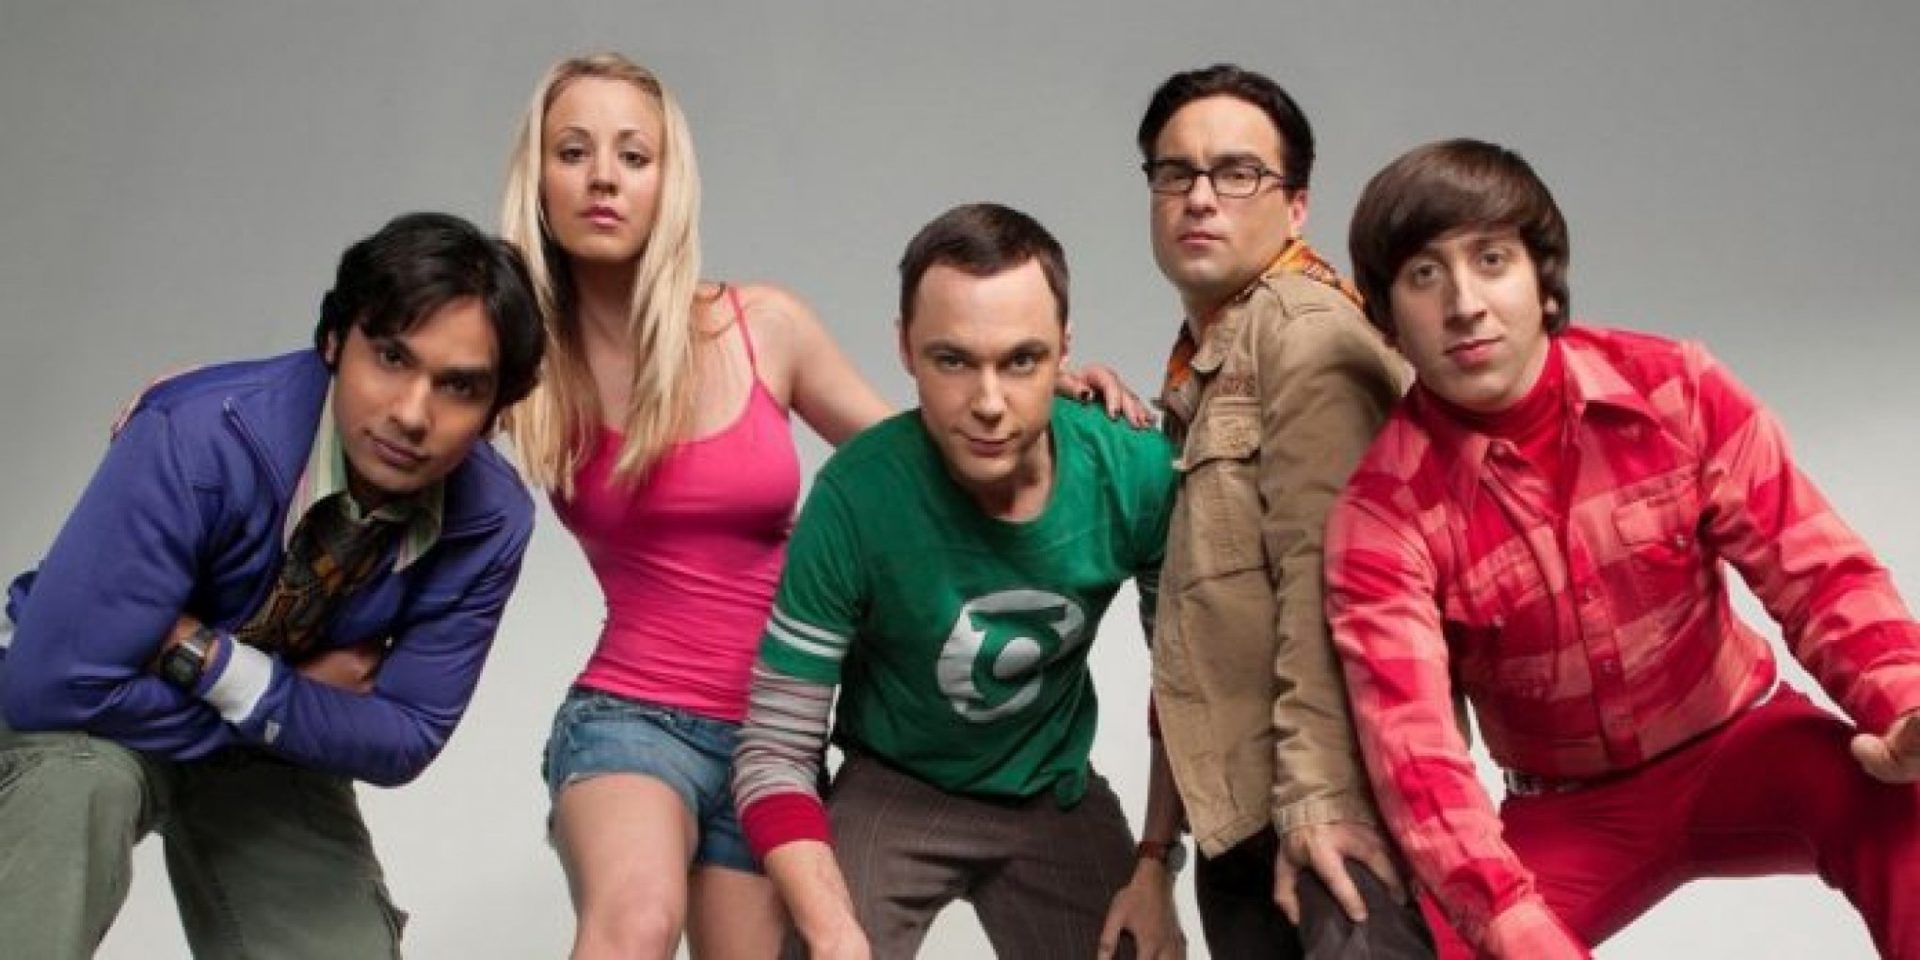 Fãs estão impressionados com novo papel de ator de The Big Bang Theory